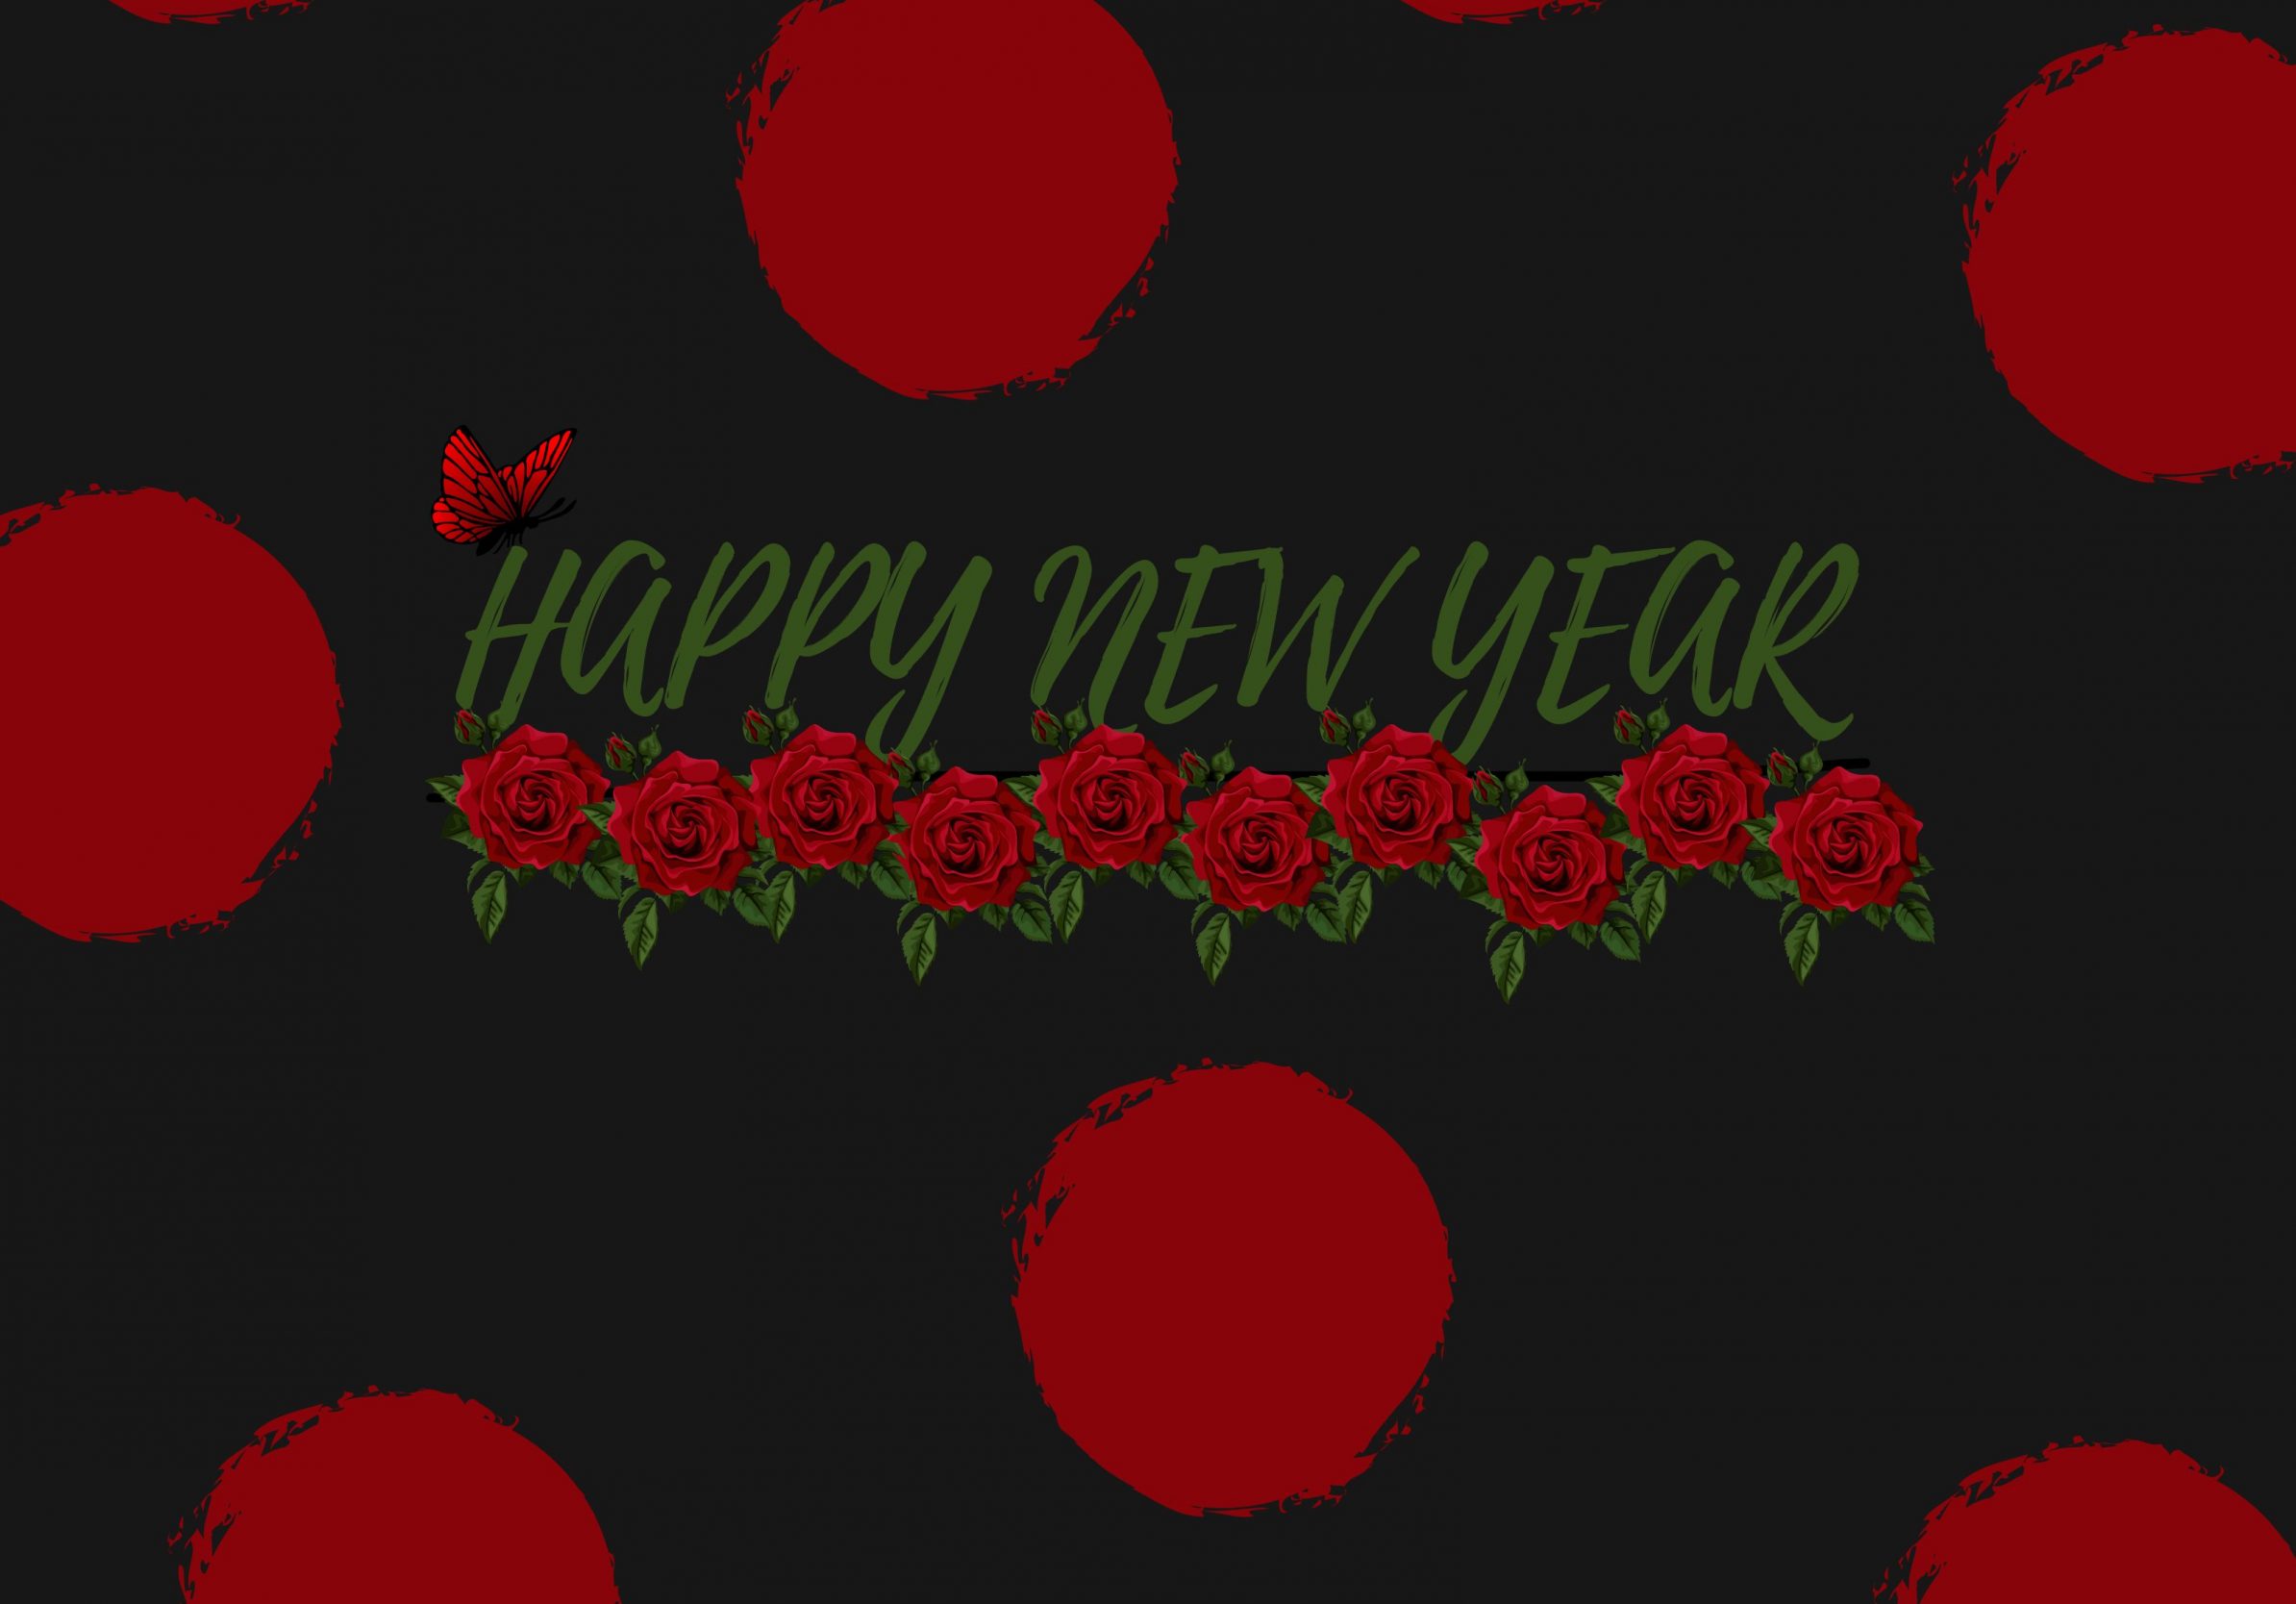 2388x1668 iPad Pro wallpapers Red Poka Dot New Year Ipad Wallpaper 2388x1668 pixels resolution